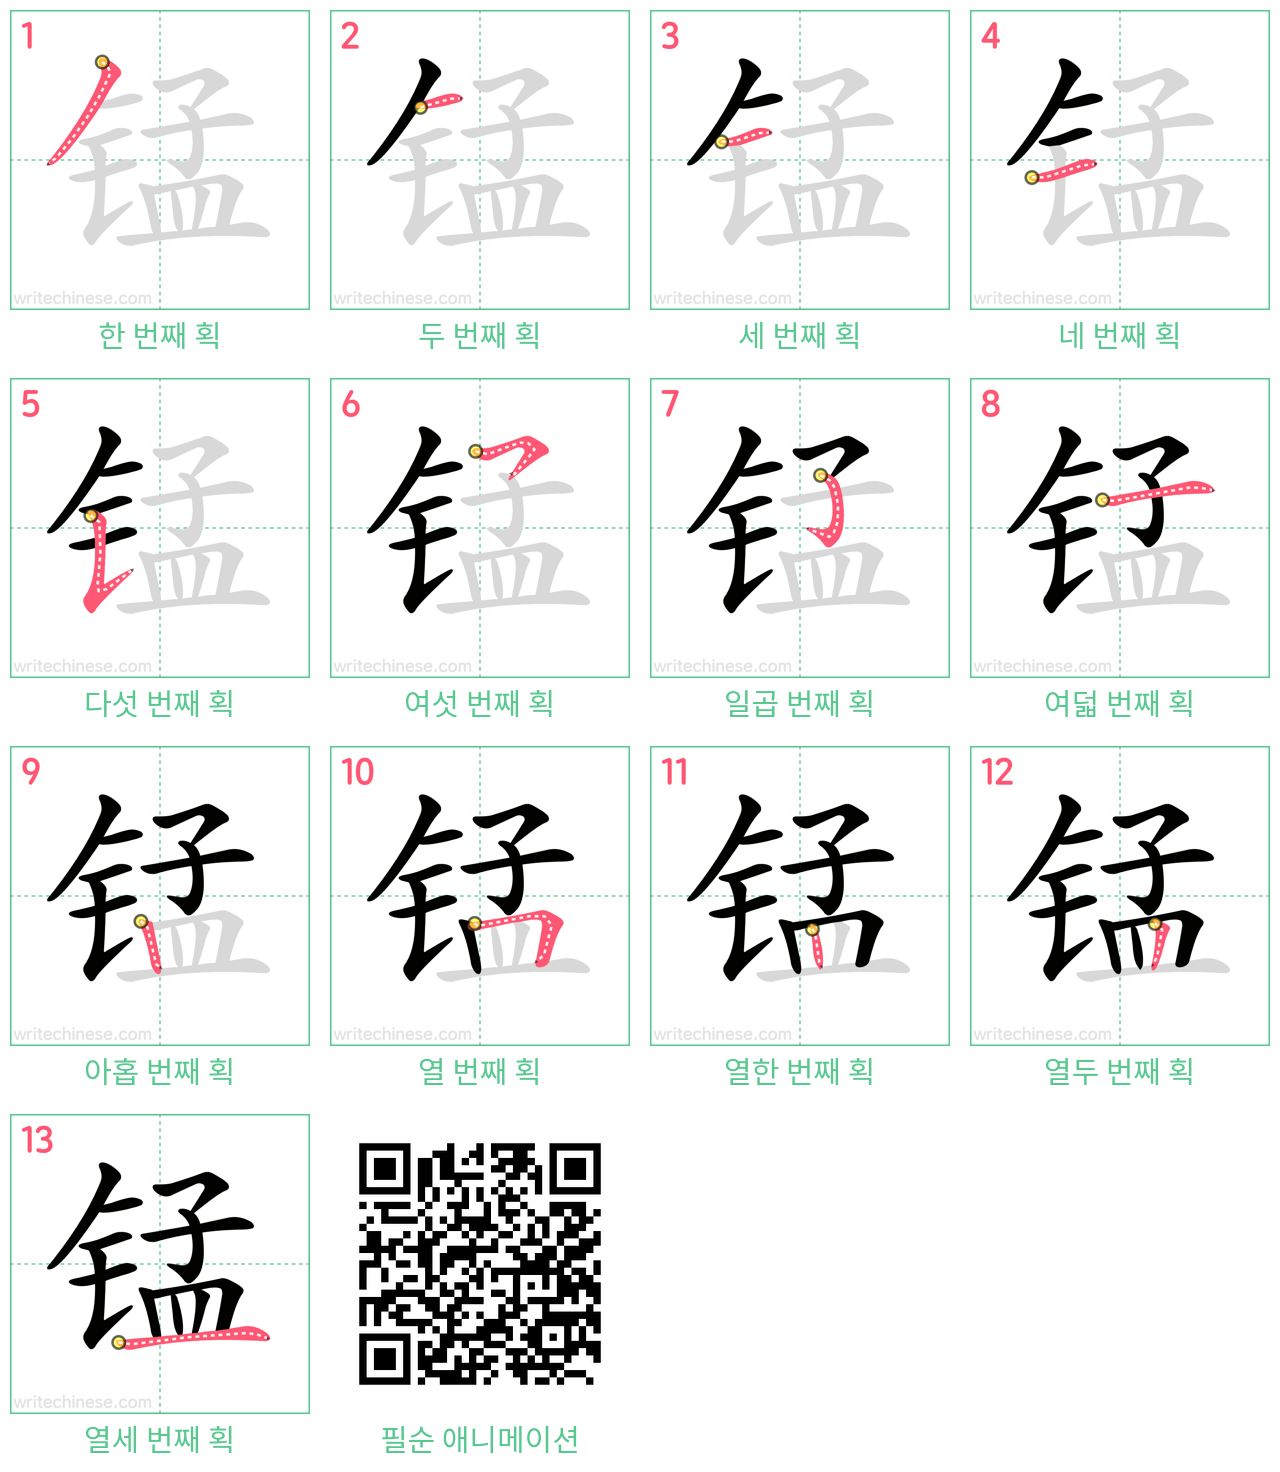 锰 step-by-step stroke order diagrams